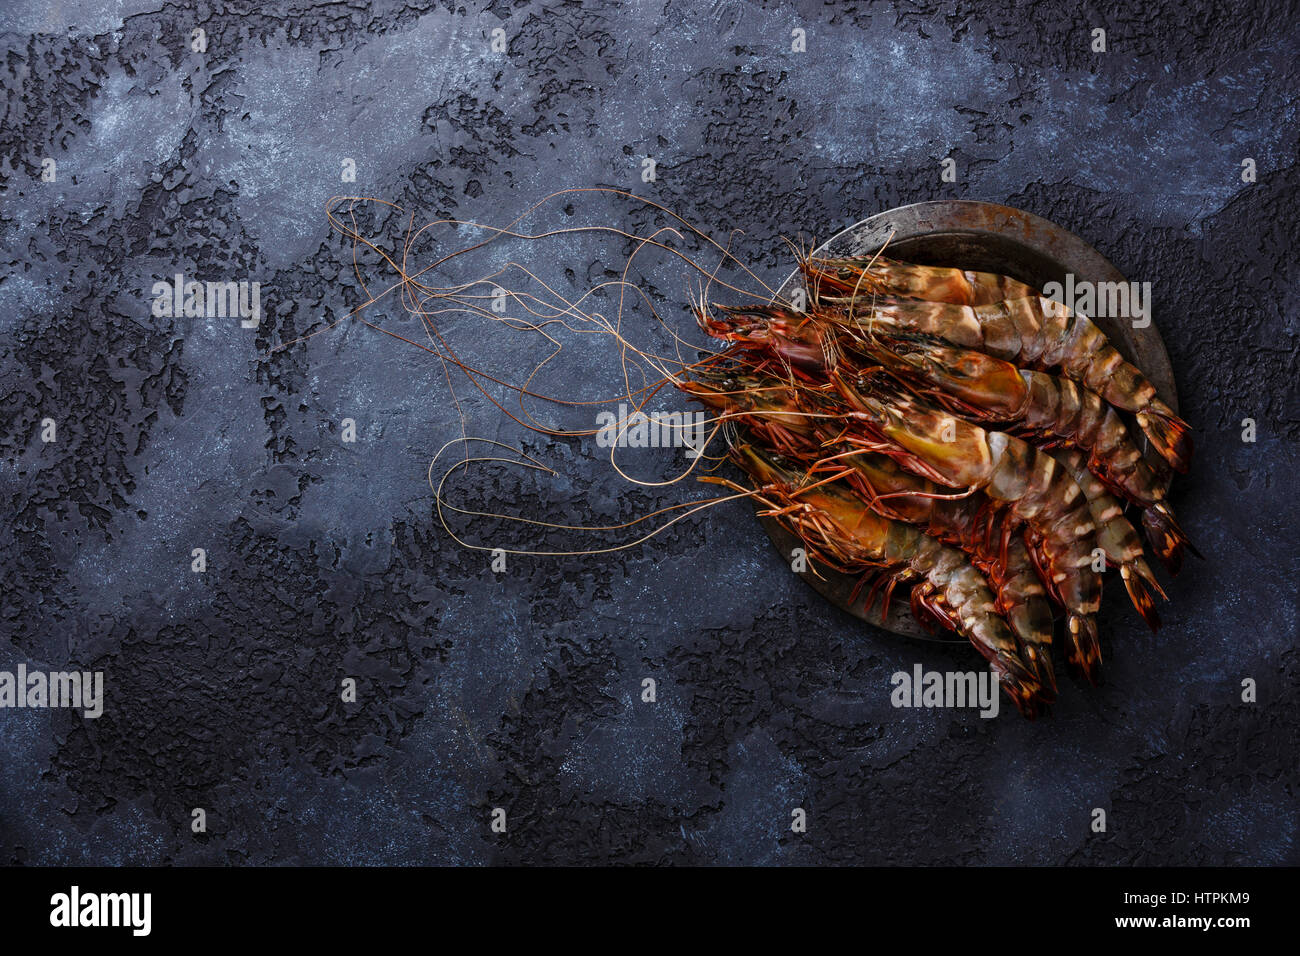 La crevette tigrée frais crus en plaque métallique sur fond noir copy space Banque D'Images